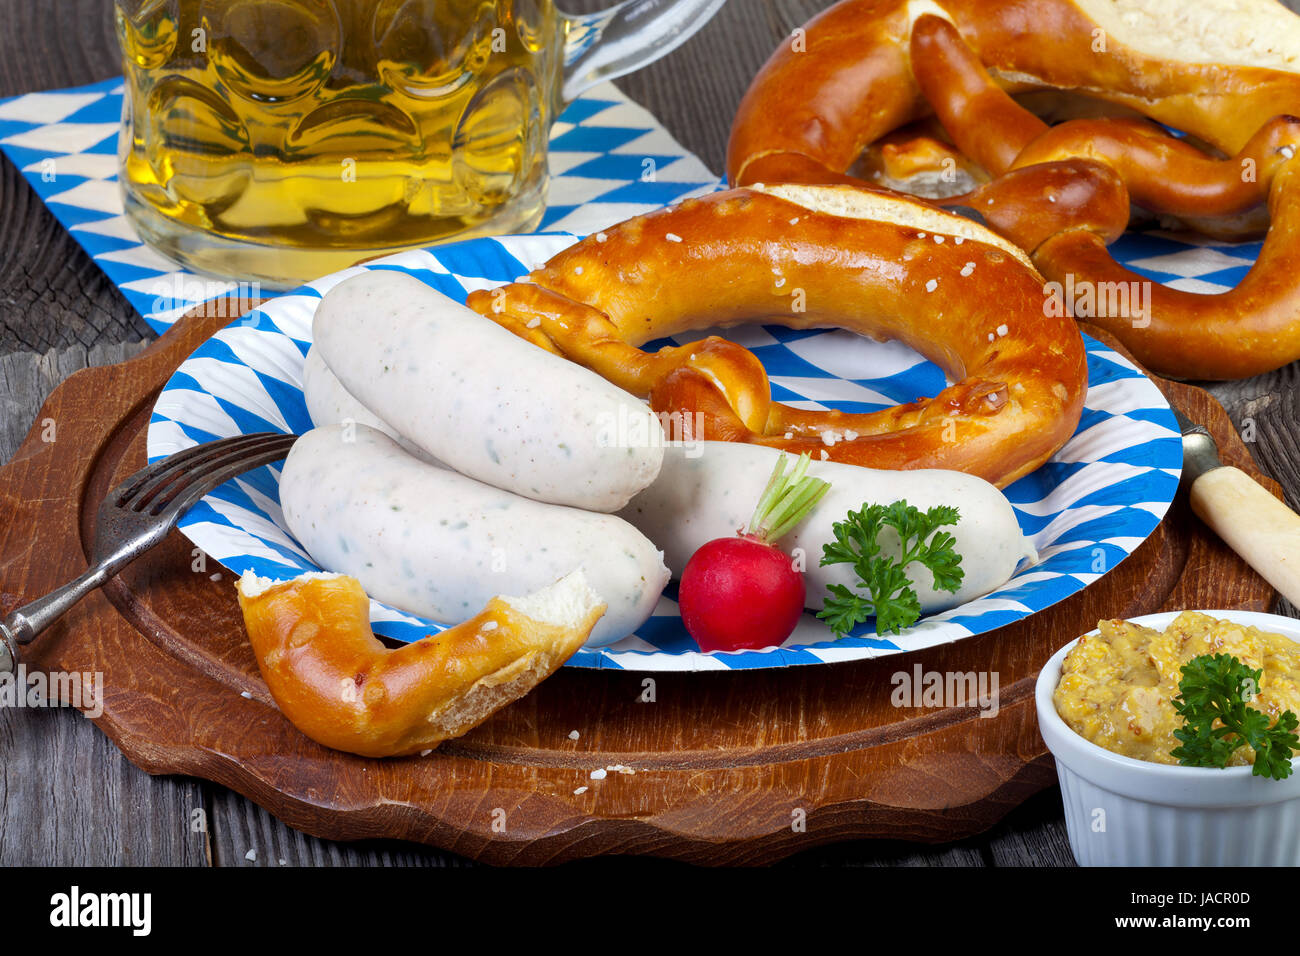 Typisch bayerische Oktoberfest Mahlzeit mit Weißwurst, Senf, Brezeln ...